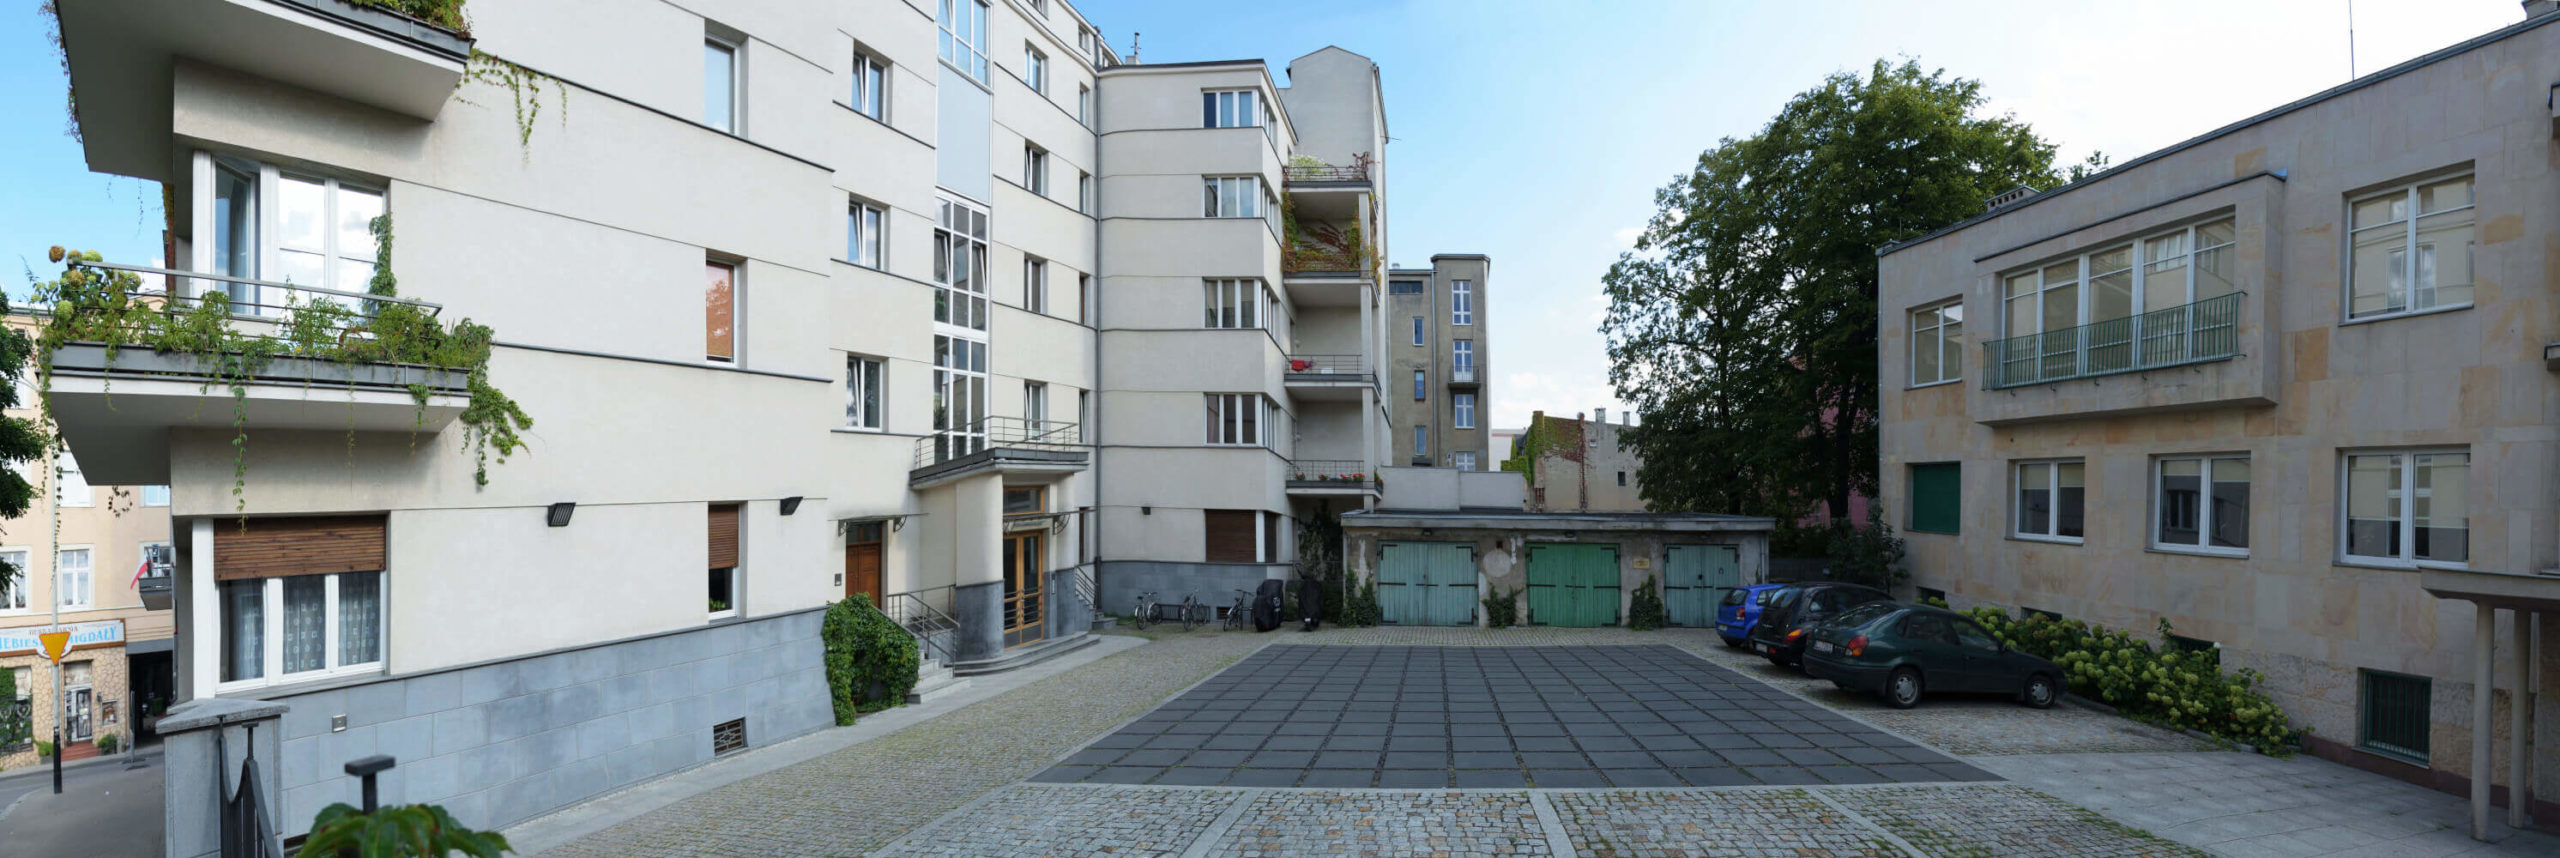 Biuro ARprojekt zielone podwórko Plac Komuny Paryskiej